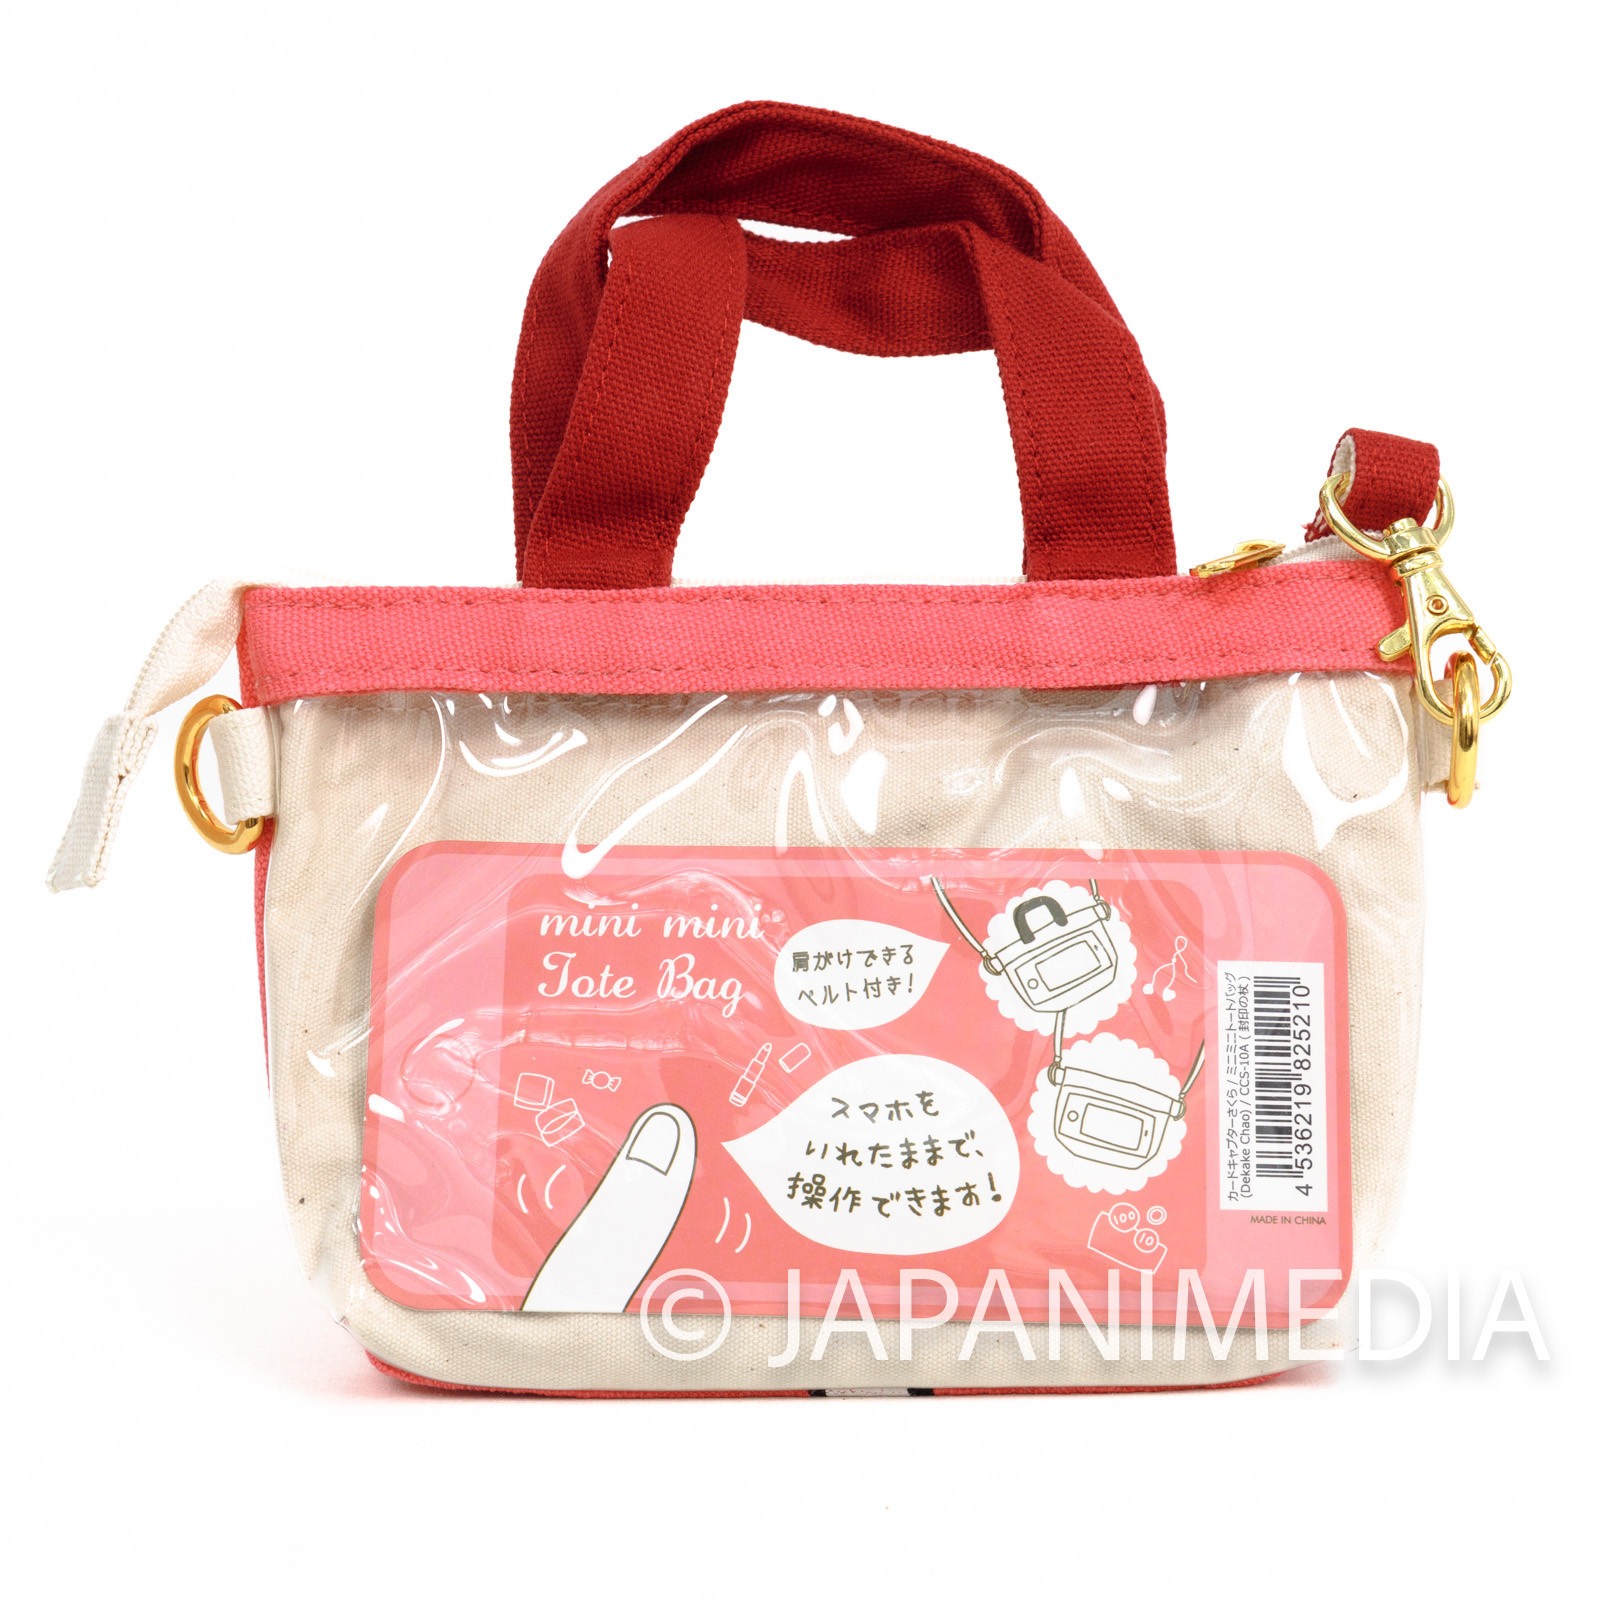 Cardcaptor Sakura Clow Key Pouch bag 